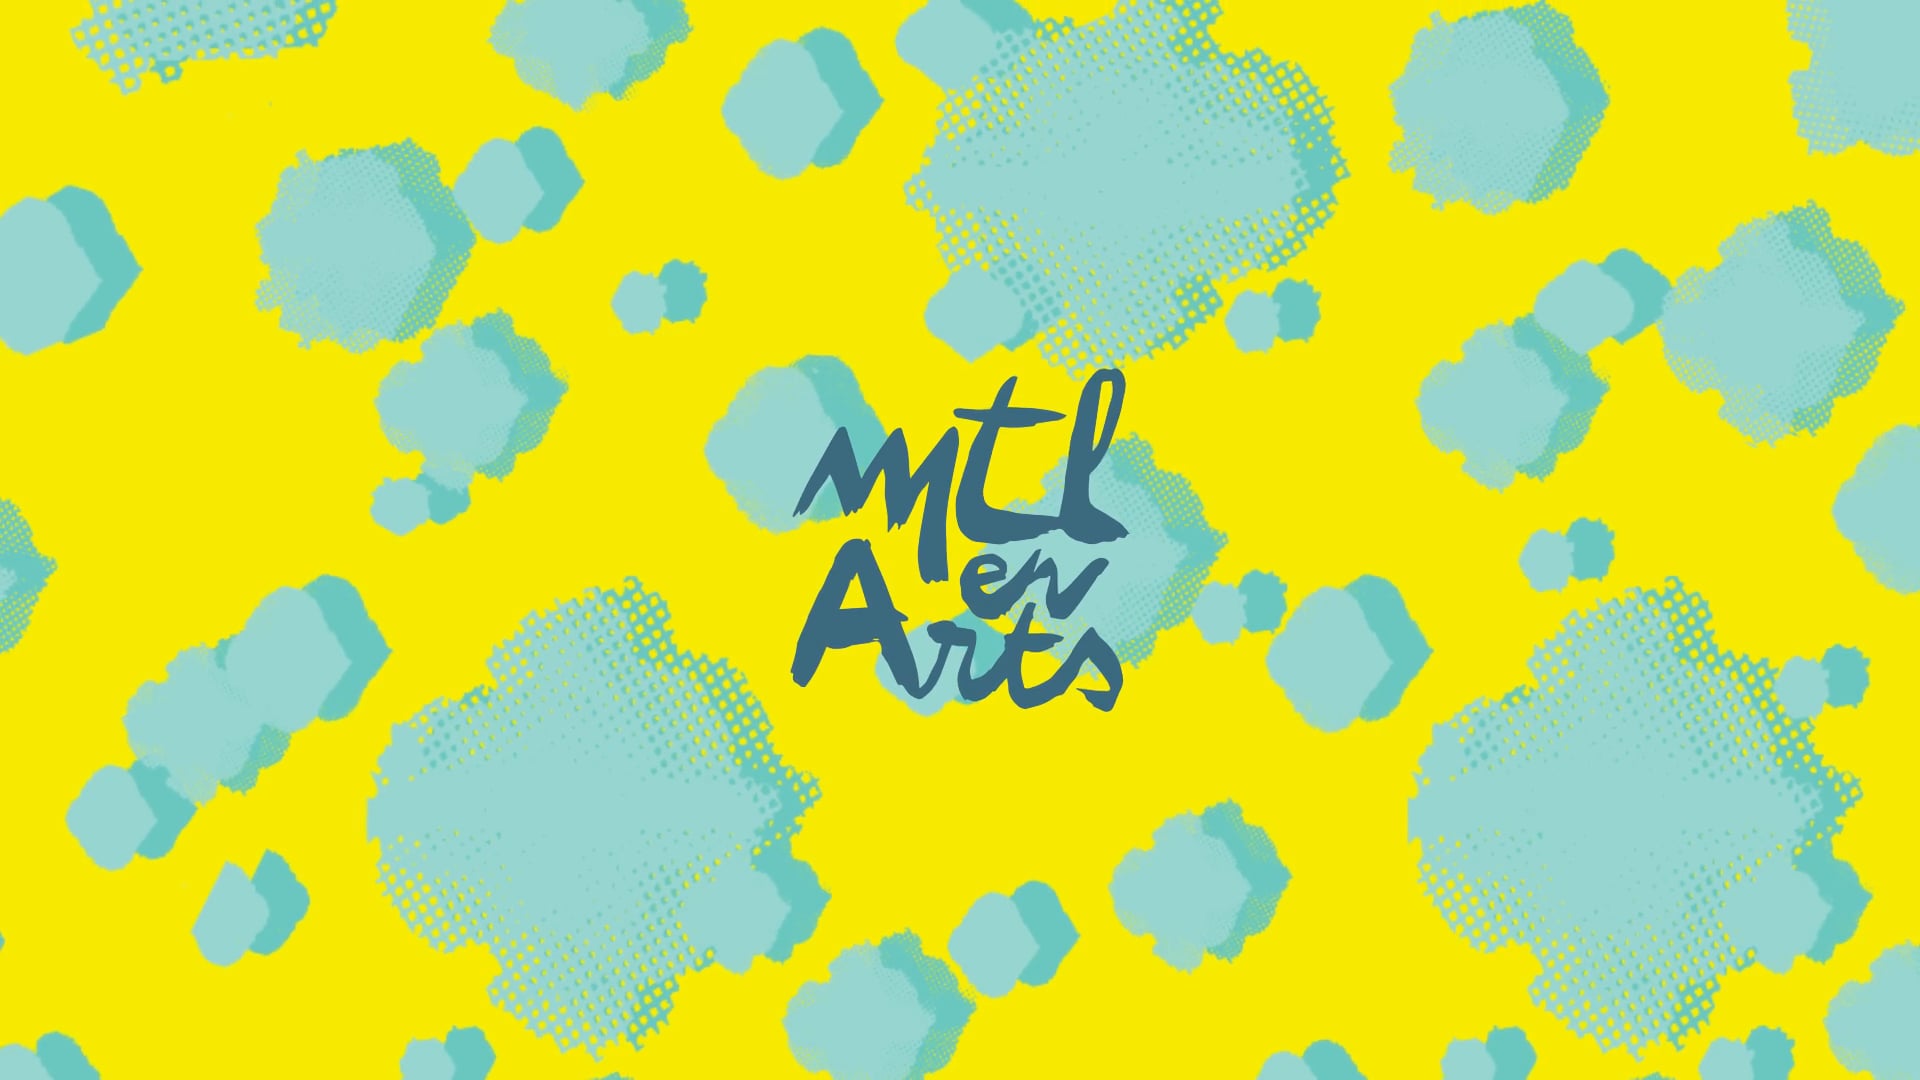 MTL en Arts 2018